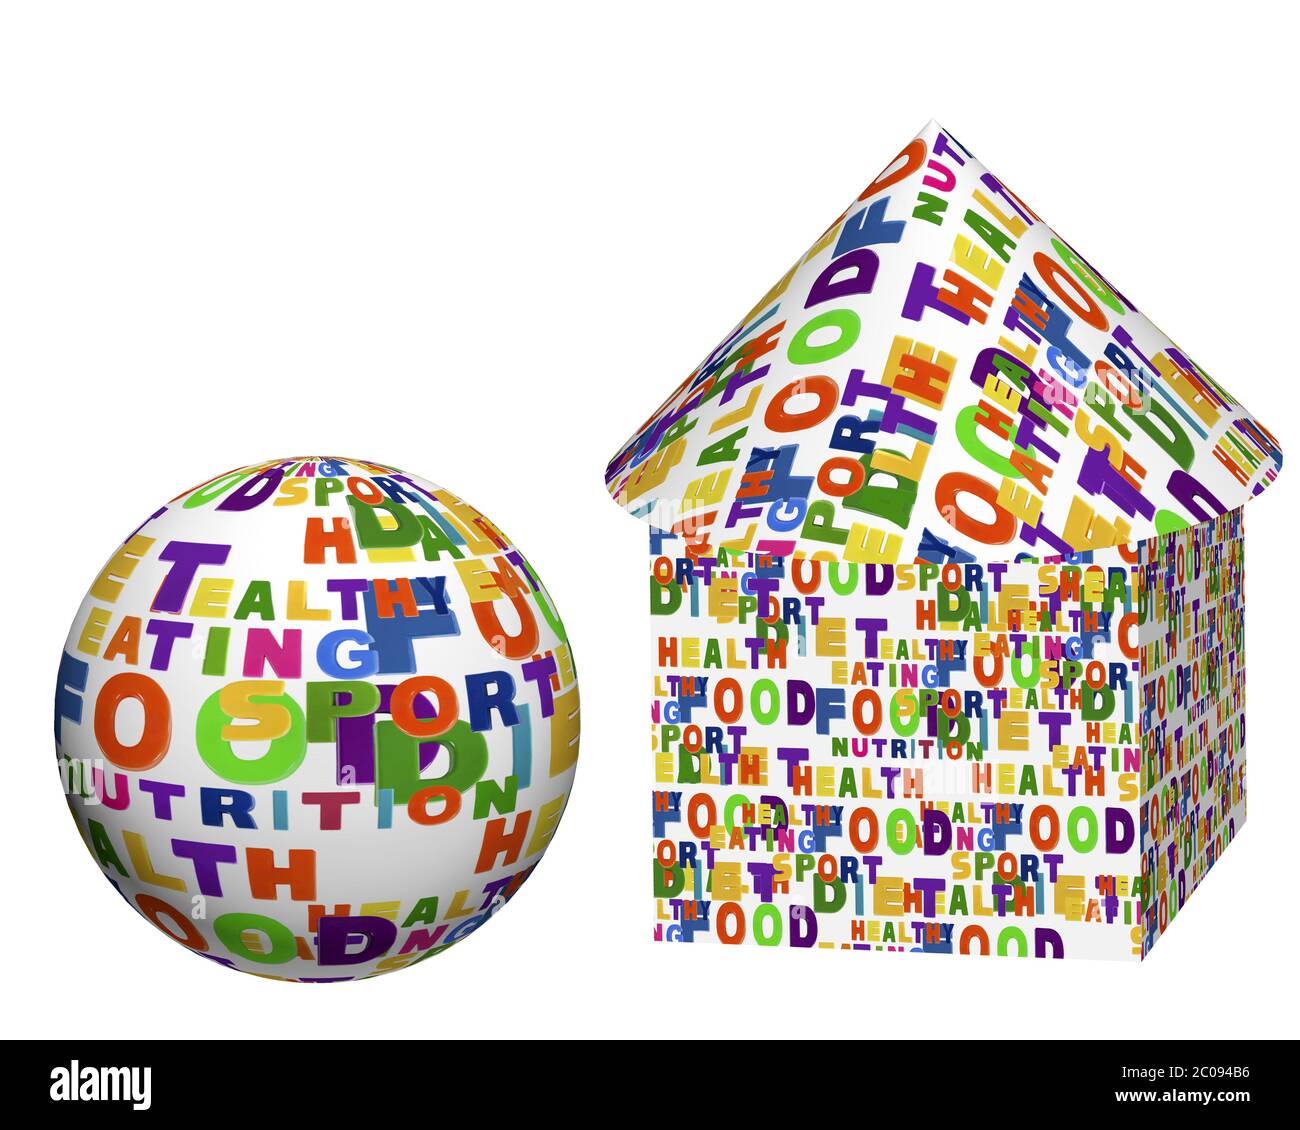 Immagine concettuale di una nuvola di tag, espressa come forme geometriche: Una sfera, una scatola, un cilindro e un cono Foto Stock